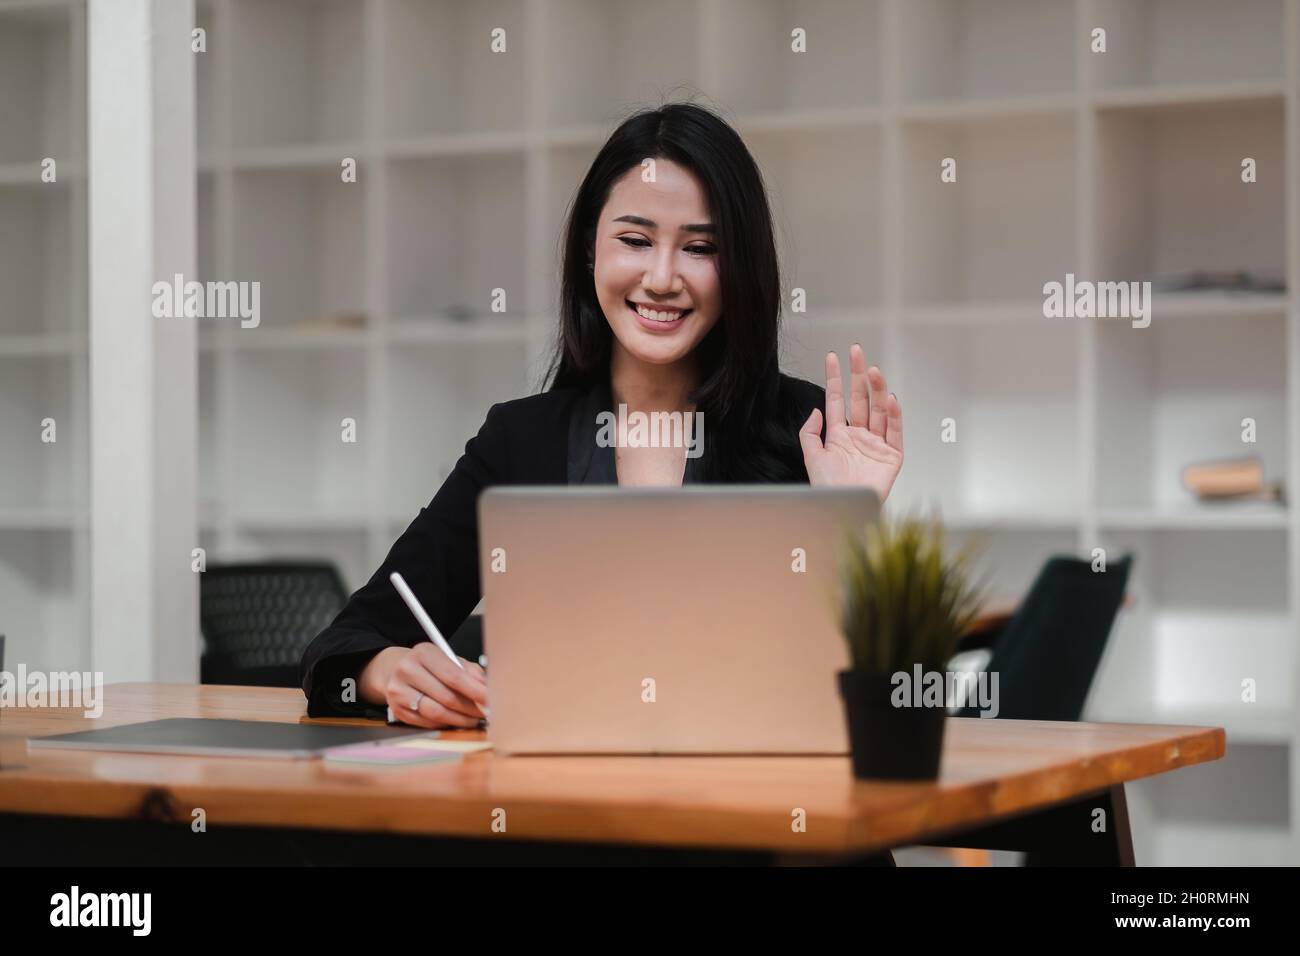 Bild einer glücklichen asiatischen Frau, die lächelt und die Hand auf den Laptop schwenkt, während sie im Büro spricht oder chattet Stockfoto